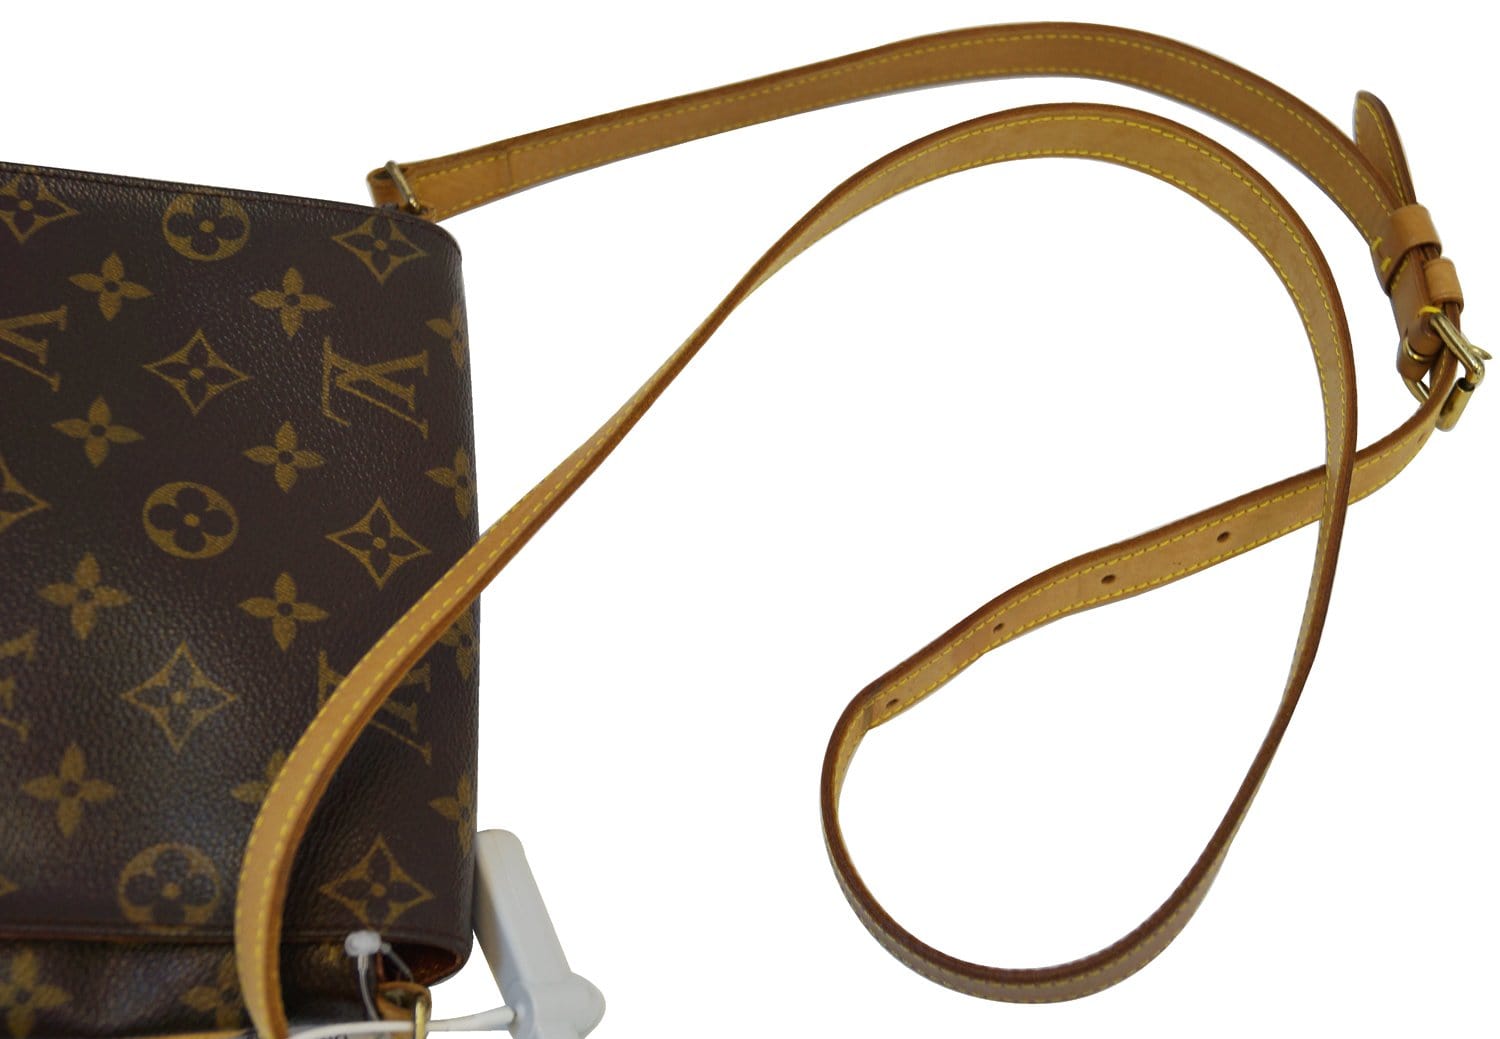 Louis Vuitton Monogram Canvas Musette Salsa Short Strap (Authentic  Pre-Owned) - ShopStyle Crossbody Bags